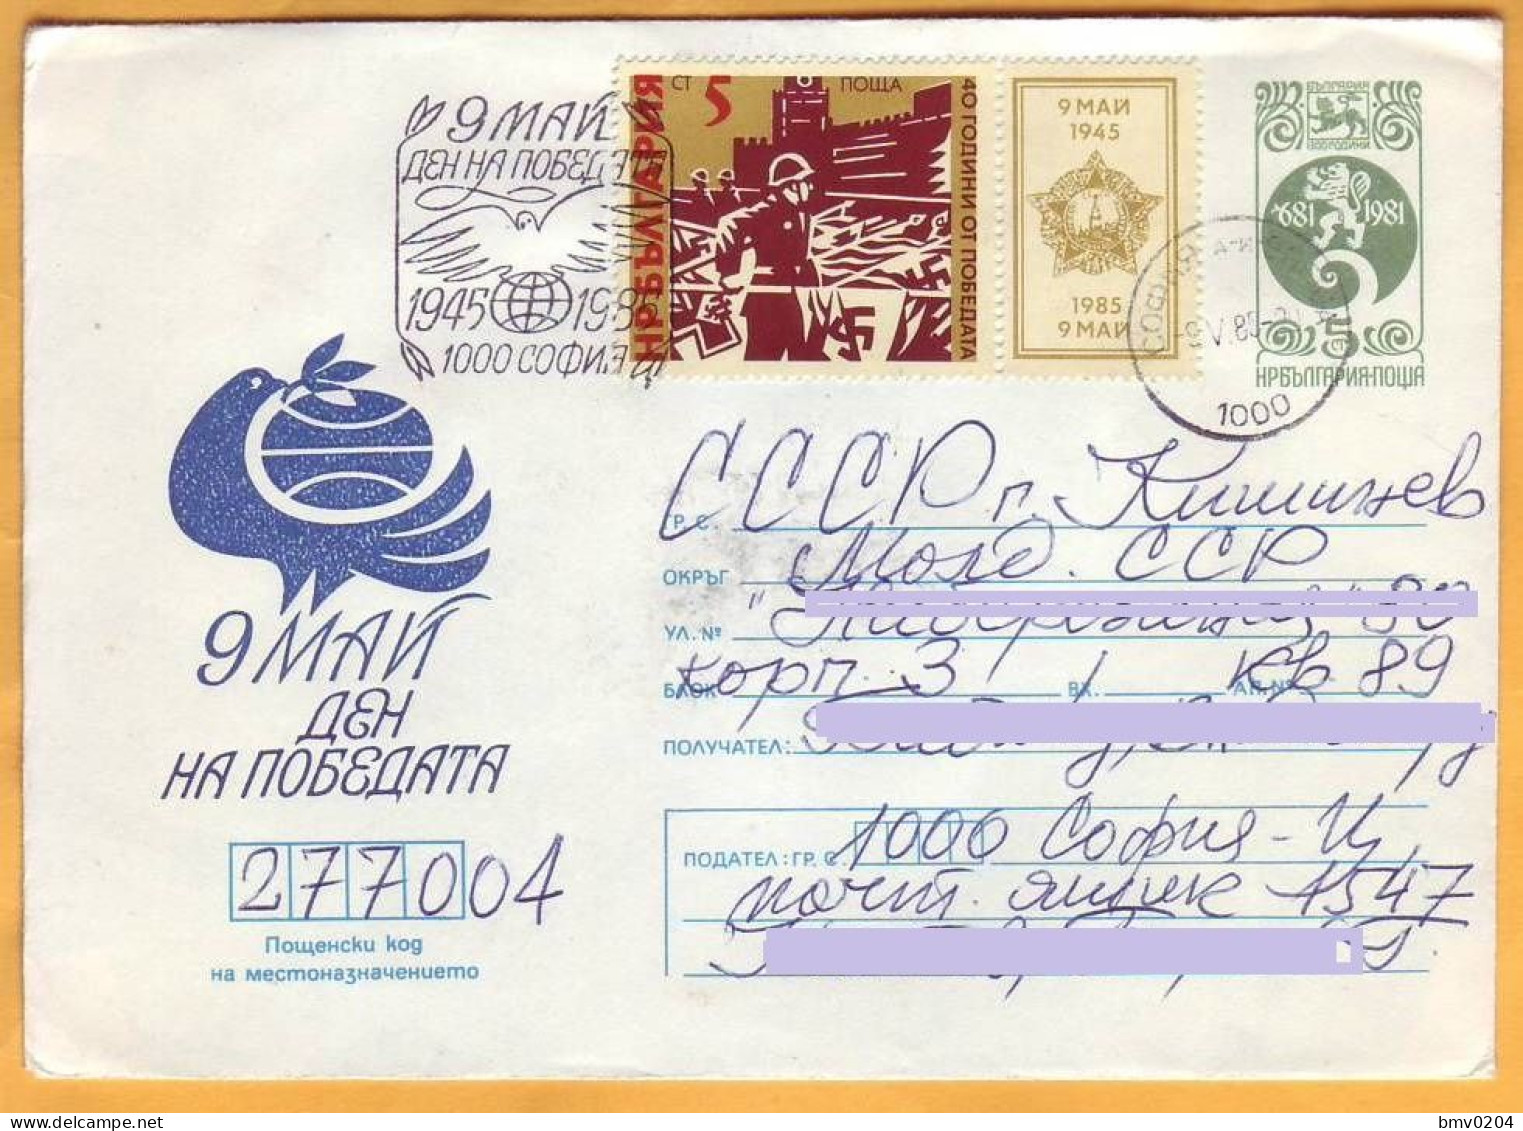 1983 1985 Bulgaria Postal Stationery Used 9 Mai - Enveloppes